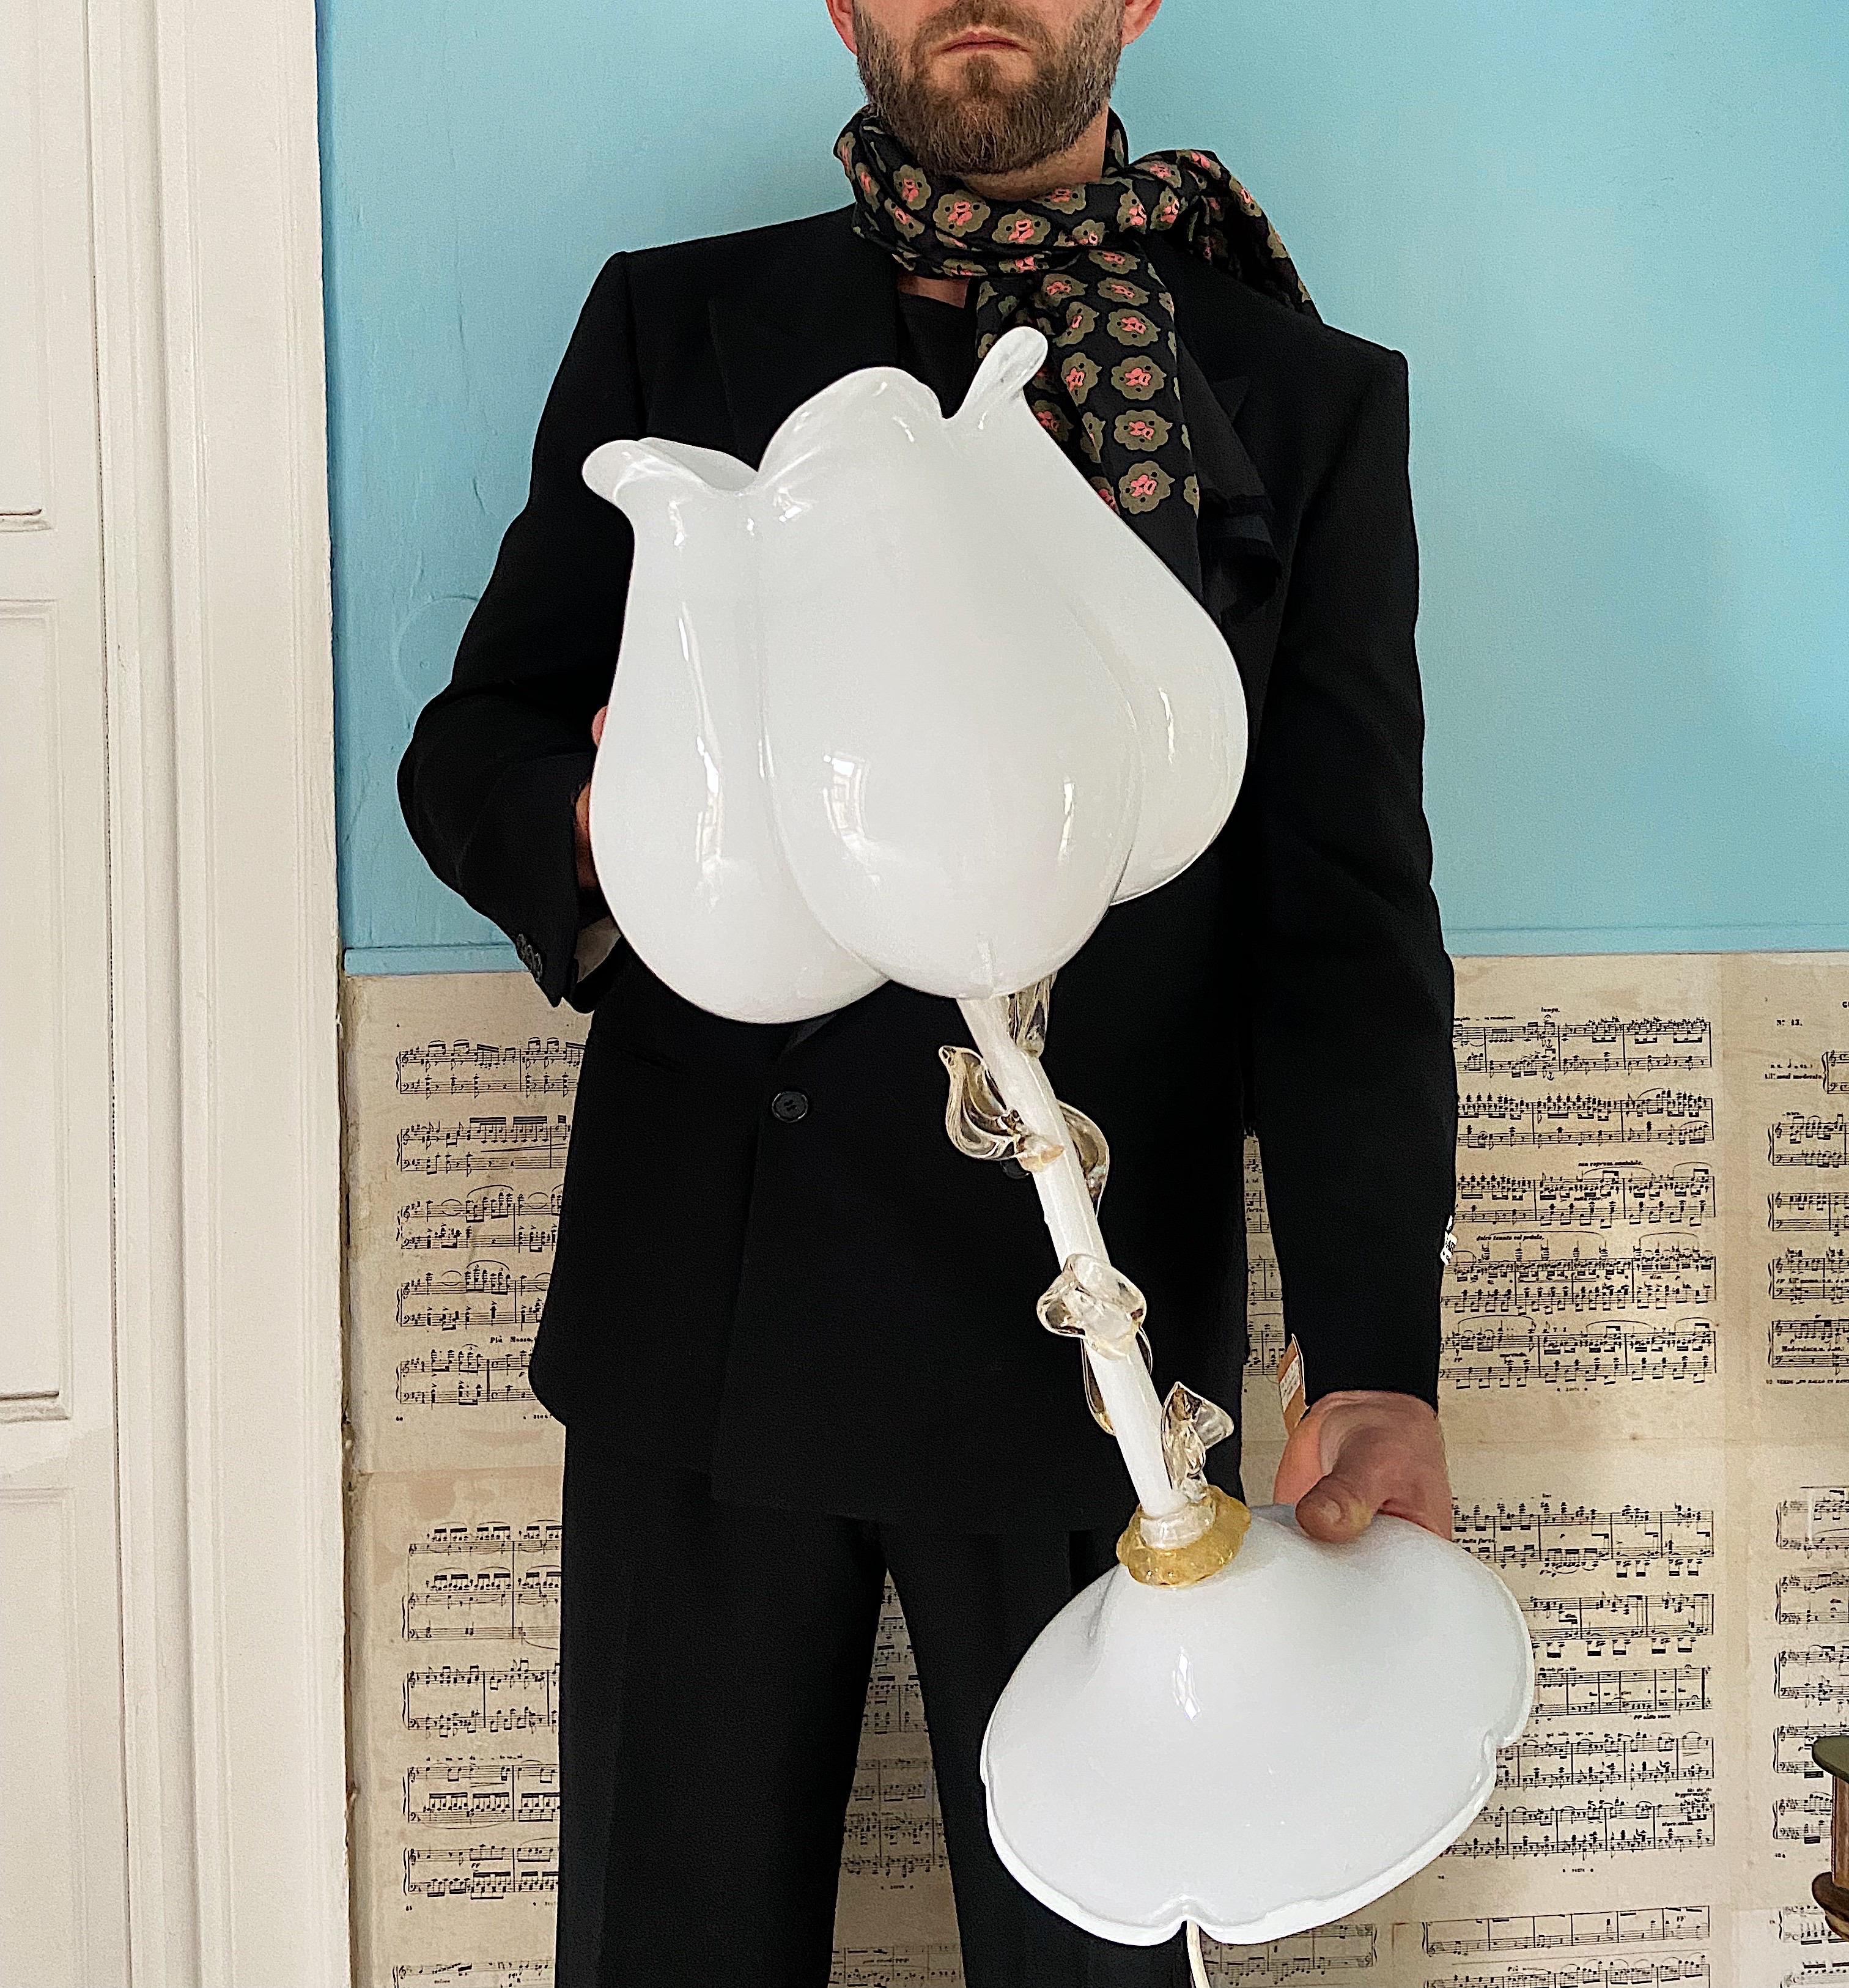 Étonnante lampe de table en verre de Murano attribuée à Vetri Murano, années 1980.
Une pièce unique qui embellira n'importe quelle chambre.

Détails
Créateur : Murano
Dimensions : hauteur : 57 cm, diamètre : 27 cm
Matériaux et techniques :